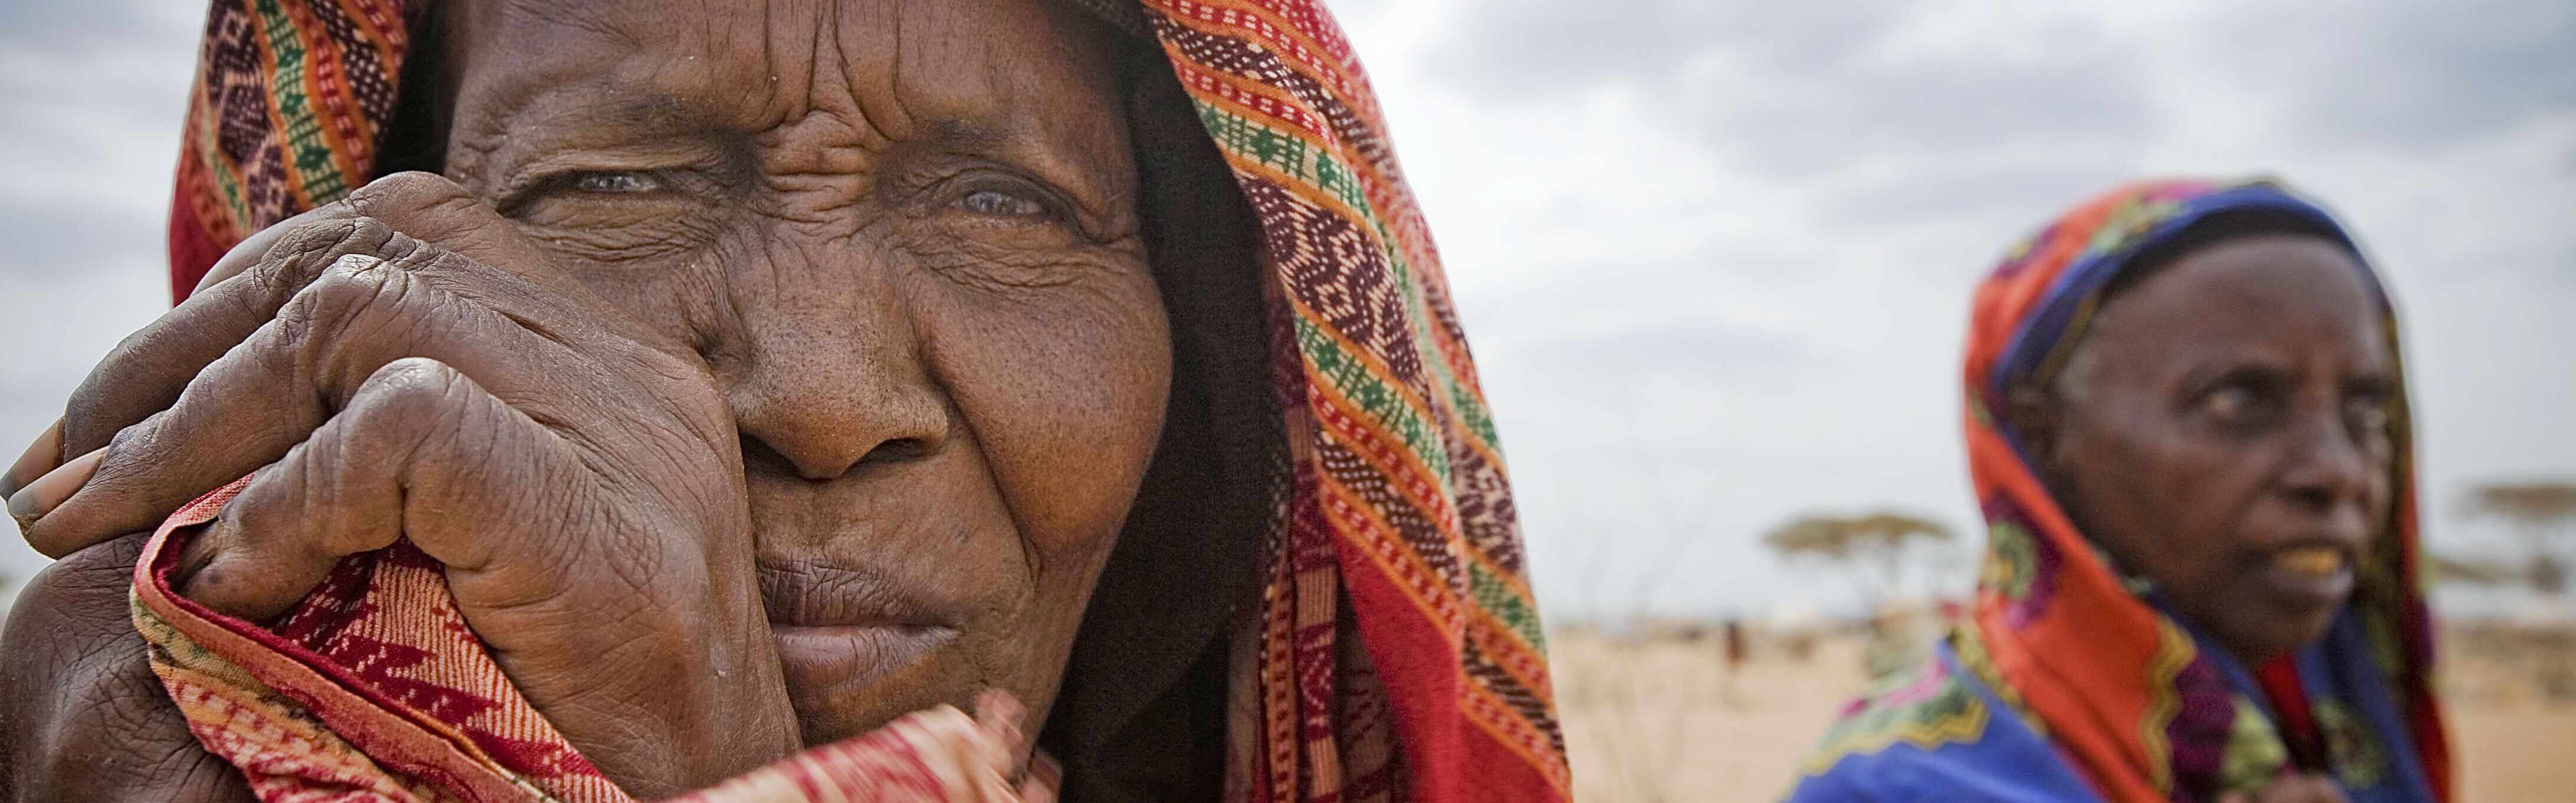 Diese Frauen in Kenia zählen zu den zahlreichen Menschen, die unter den Folgen der Dürre leiden